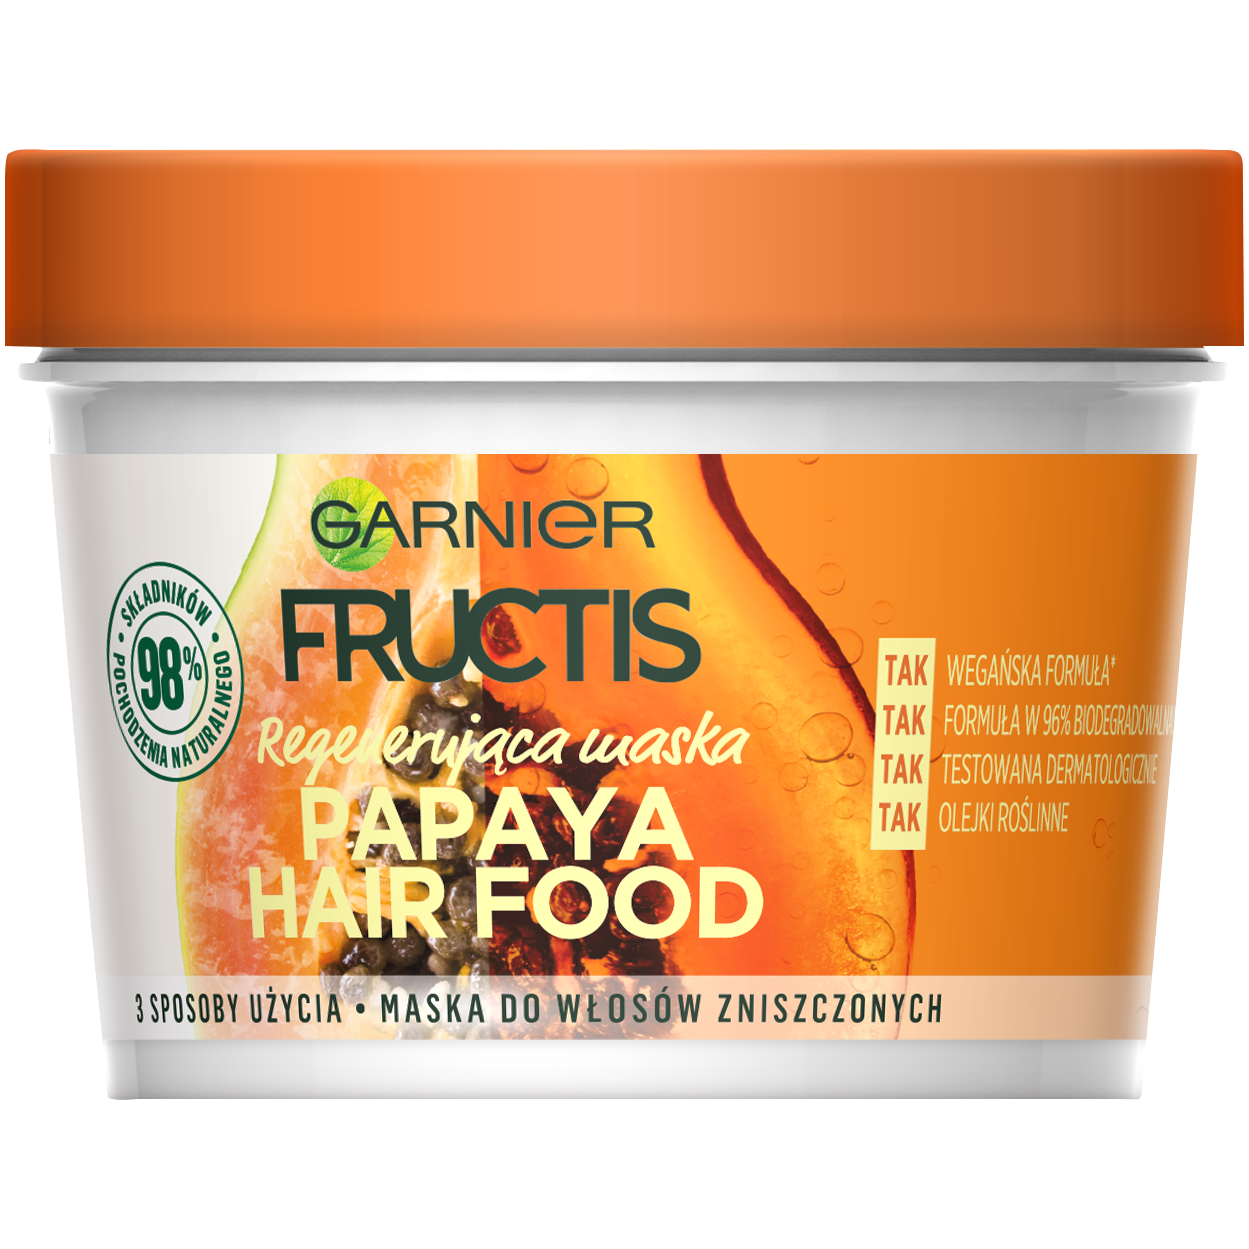 Garnier Fructis Papaja Hair Food maska do włosów zniszczonych, 390 ml |  hebe.pl